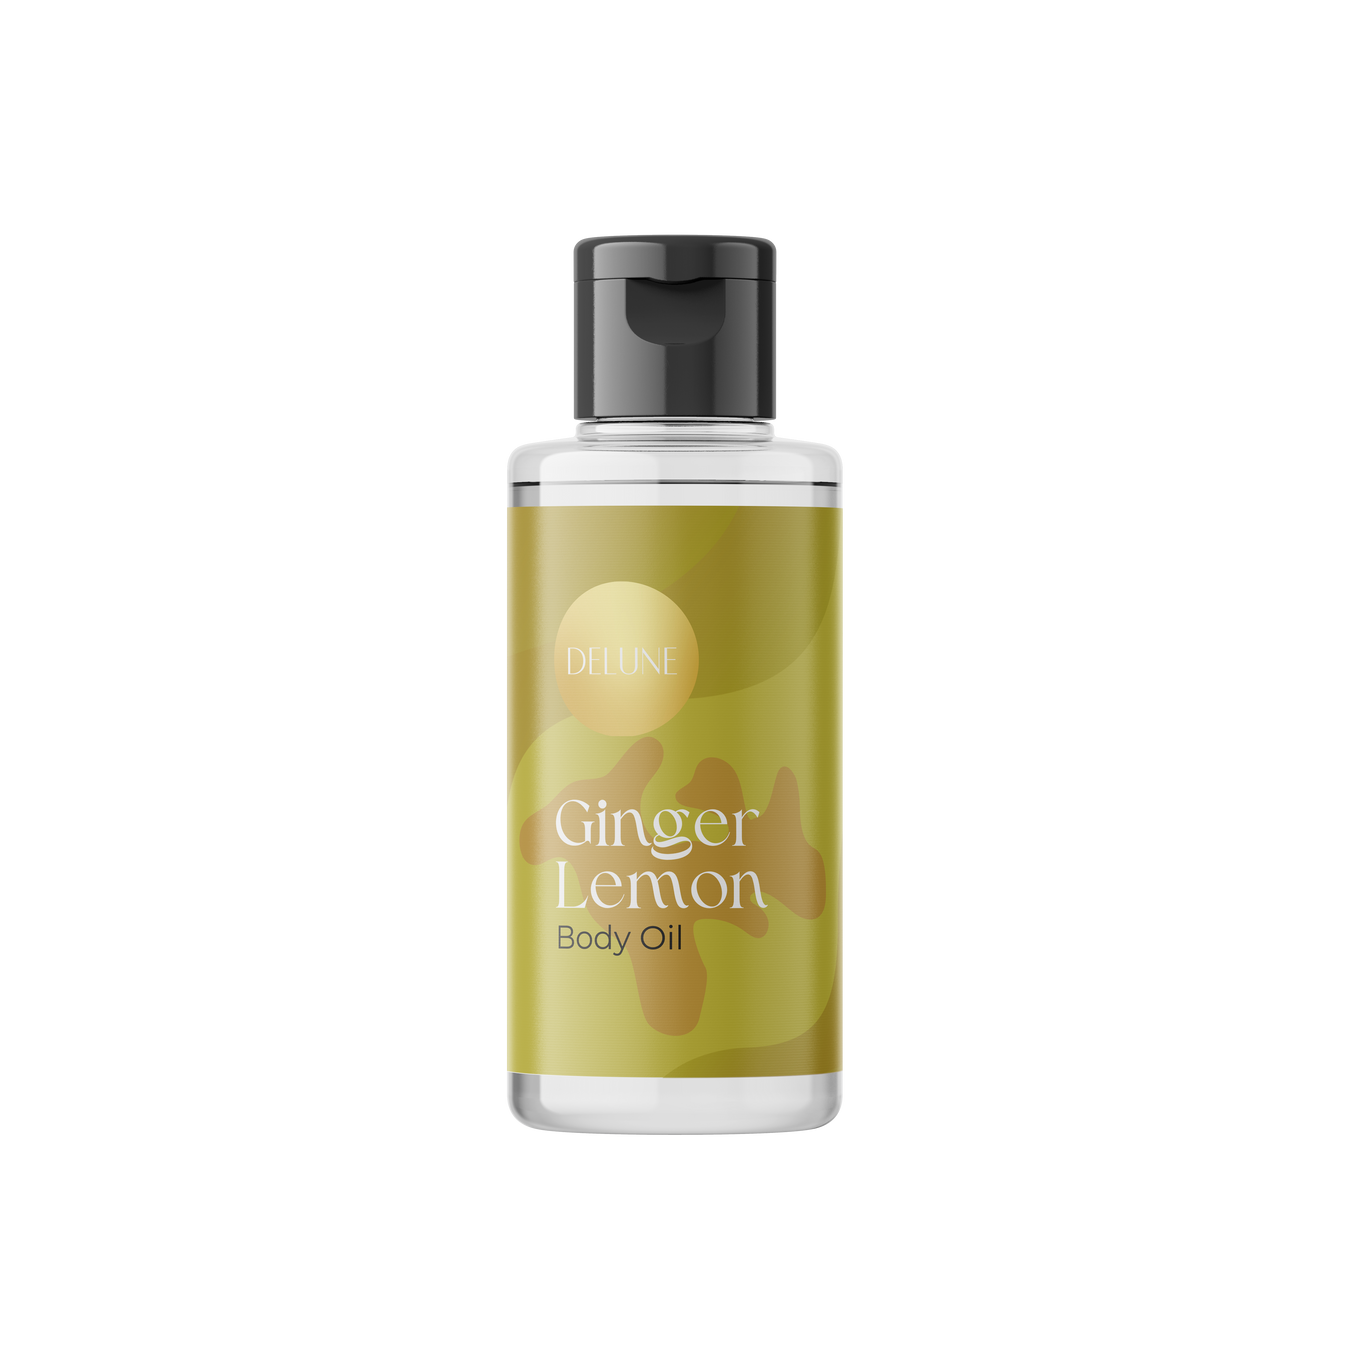 Delune Ginger Lemon Body Oil